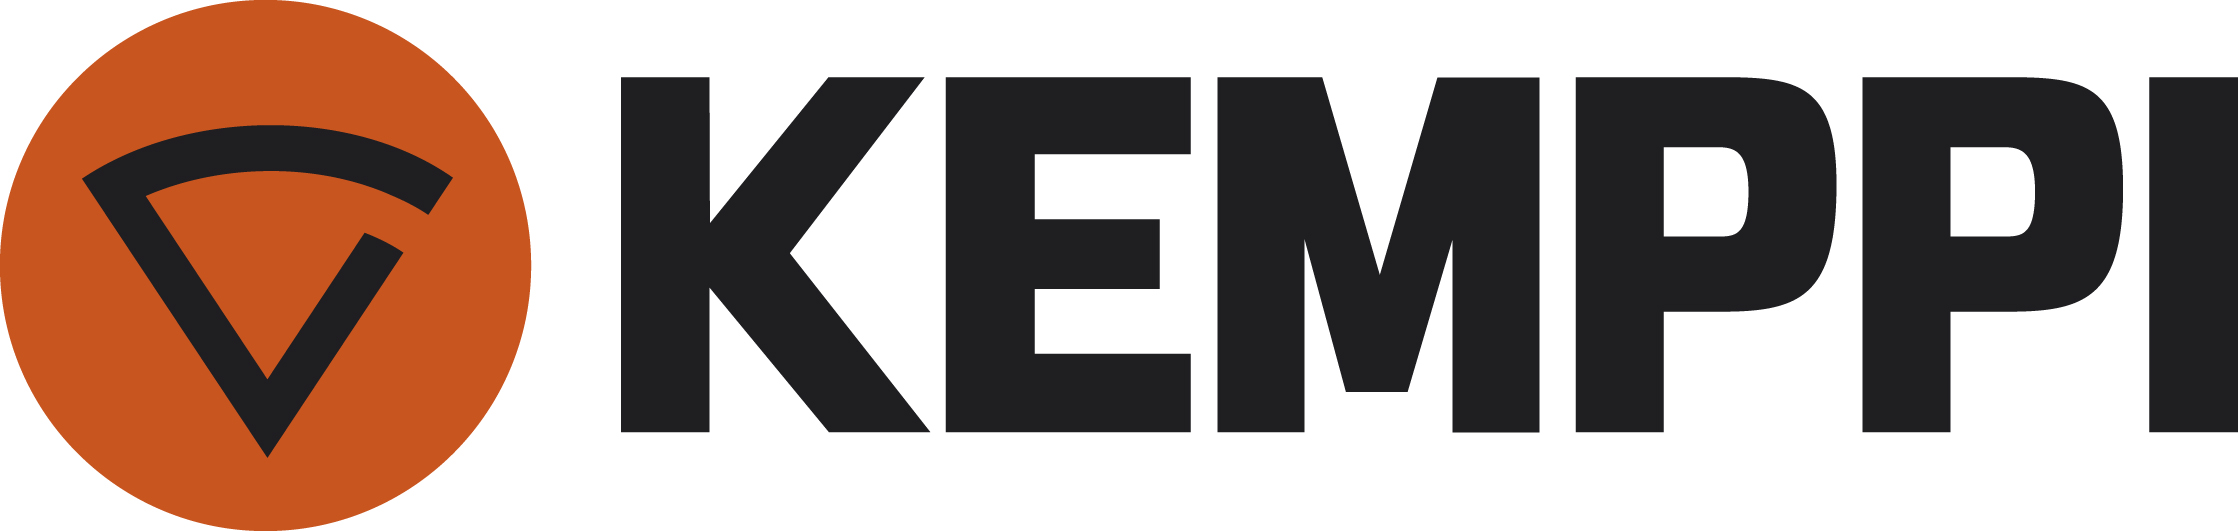 Kemppi logo PMS166